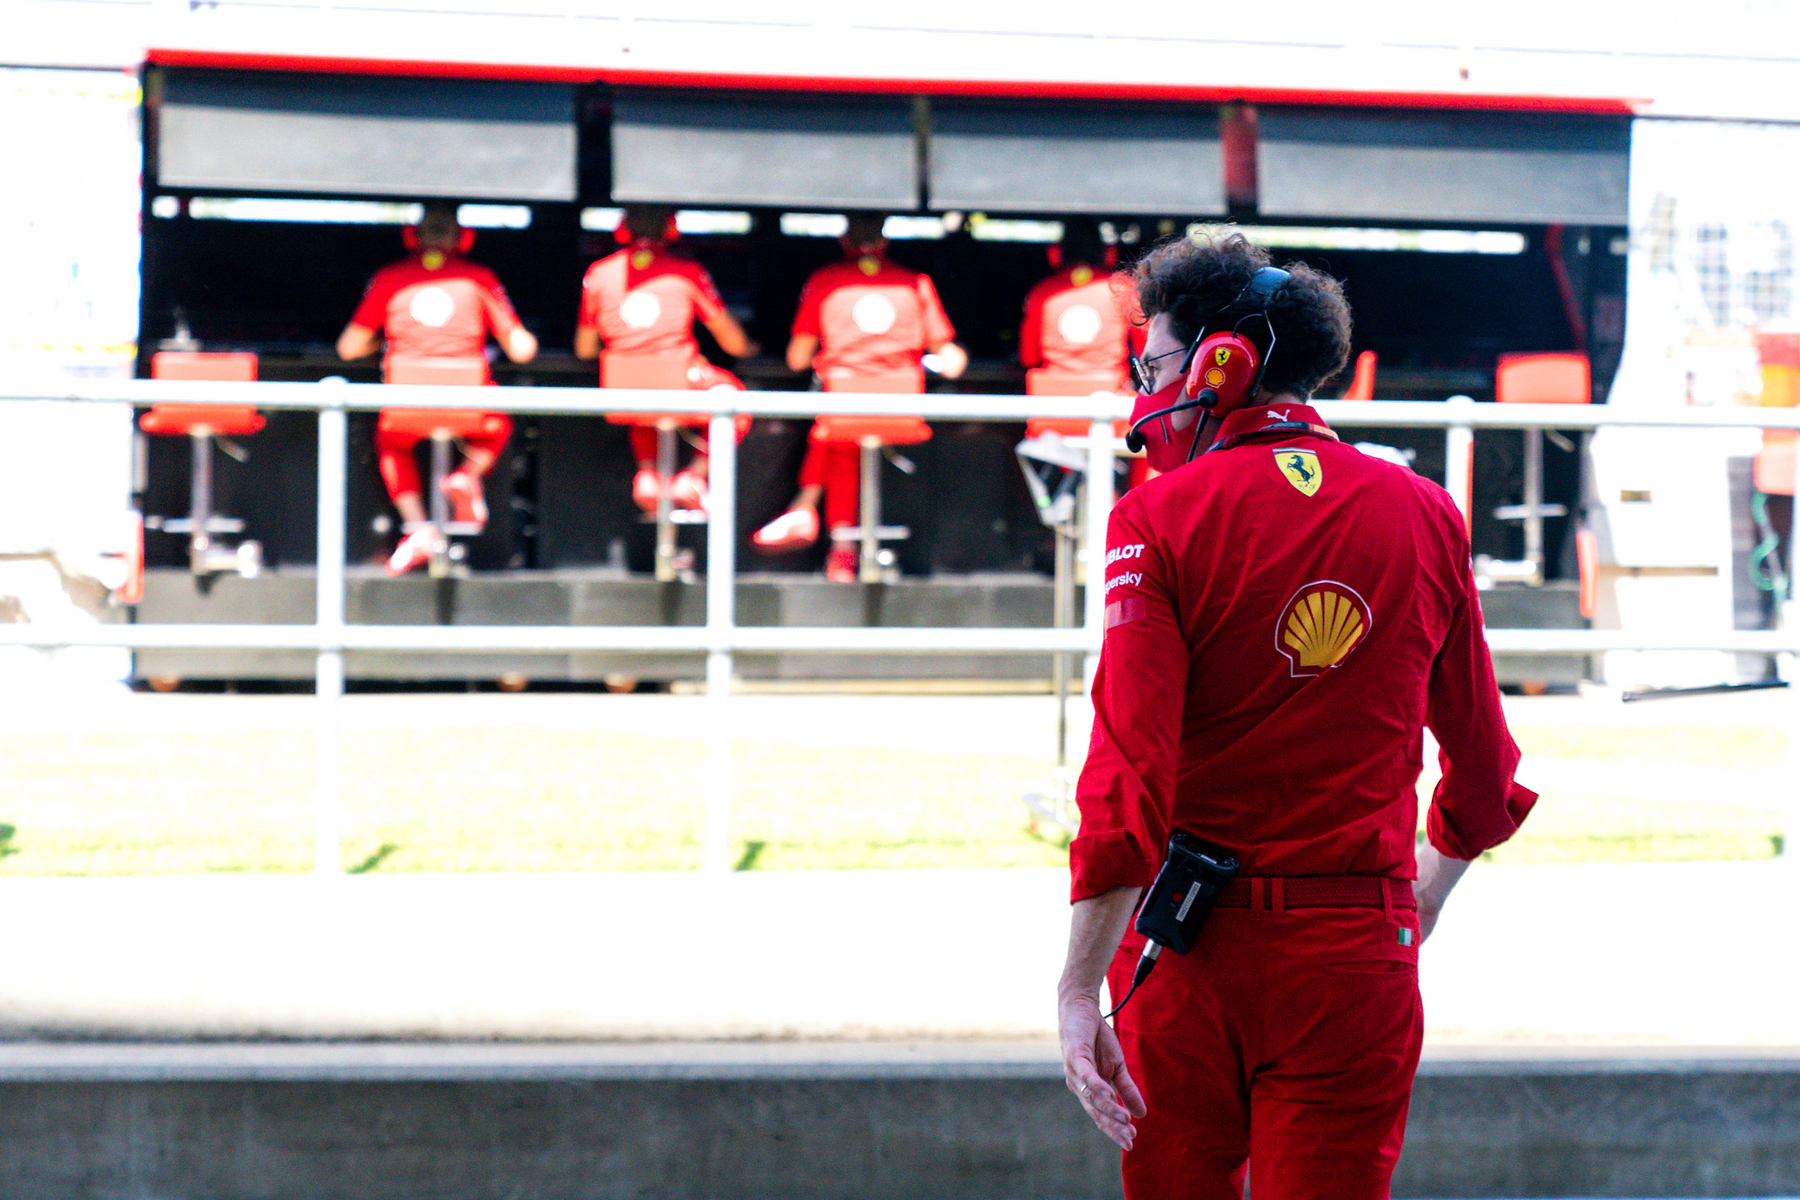 SF21 ime je Ferrarijevog bolida za iduću sezonu, Binotto najavljuje drukčije predstavljanje